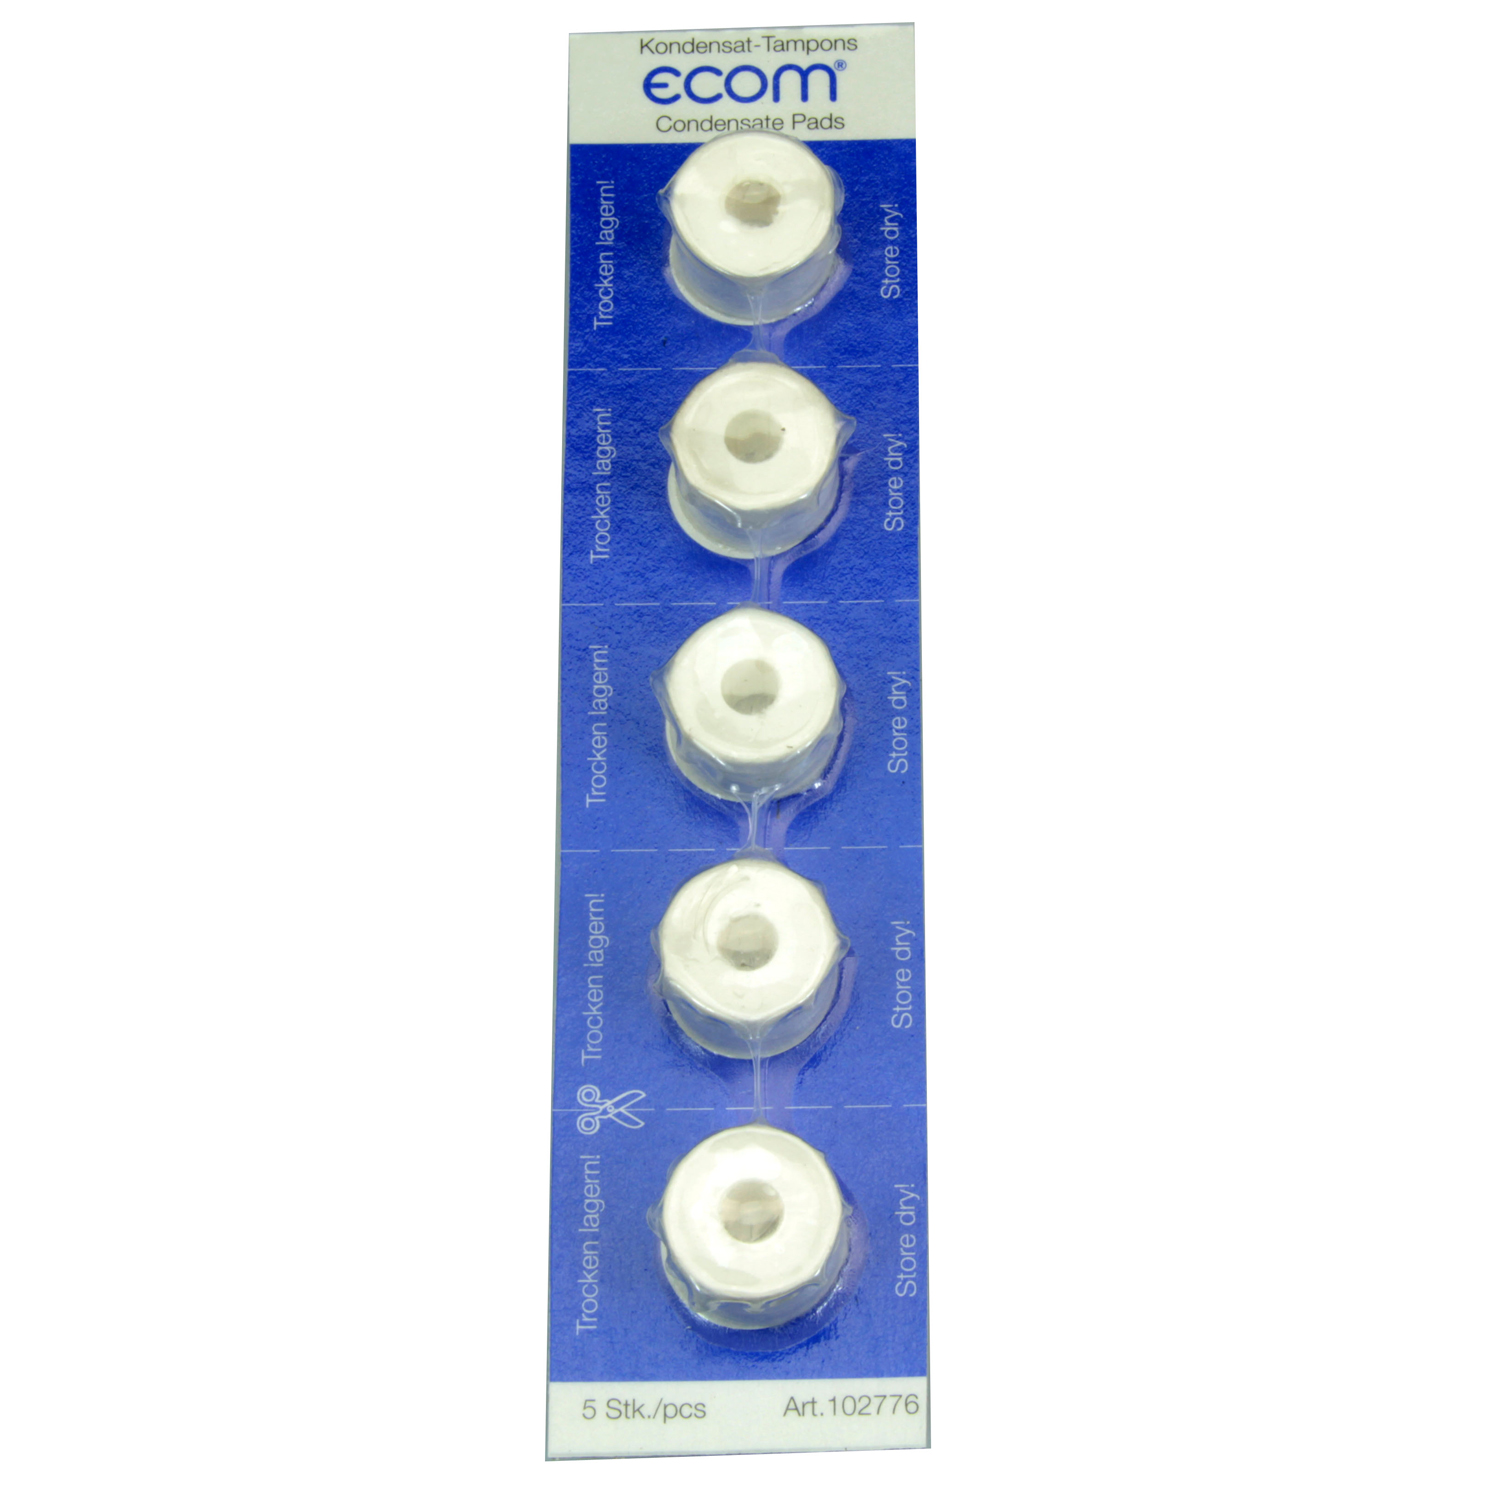 ecom - Kondensattampons (5er-Pack) für Kondensatfalle - 102776